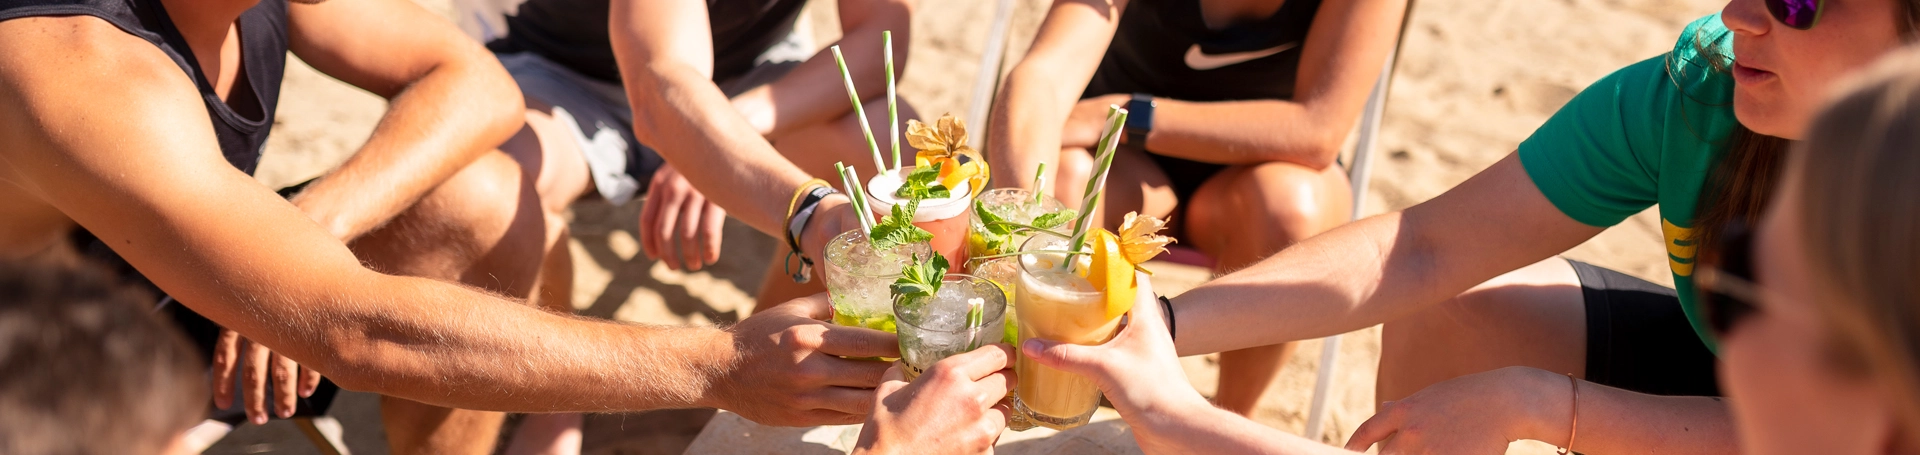 Strandschleicher Liegestühle Cocktails